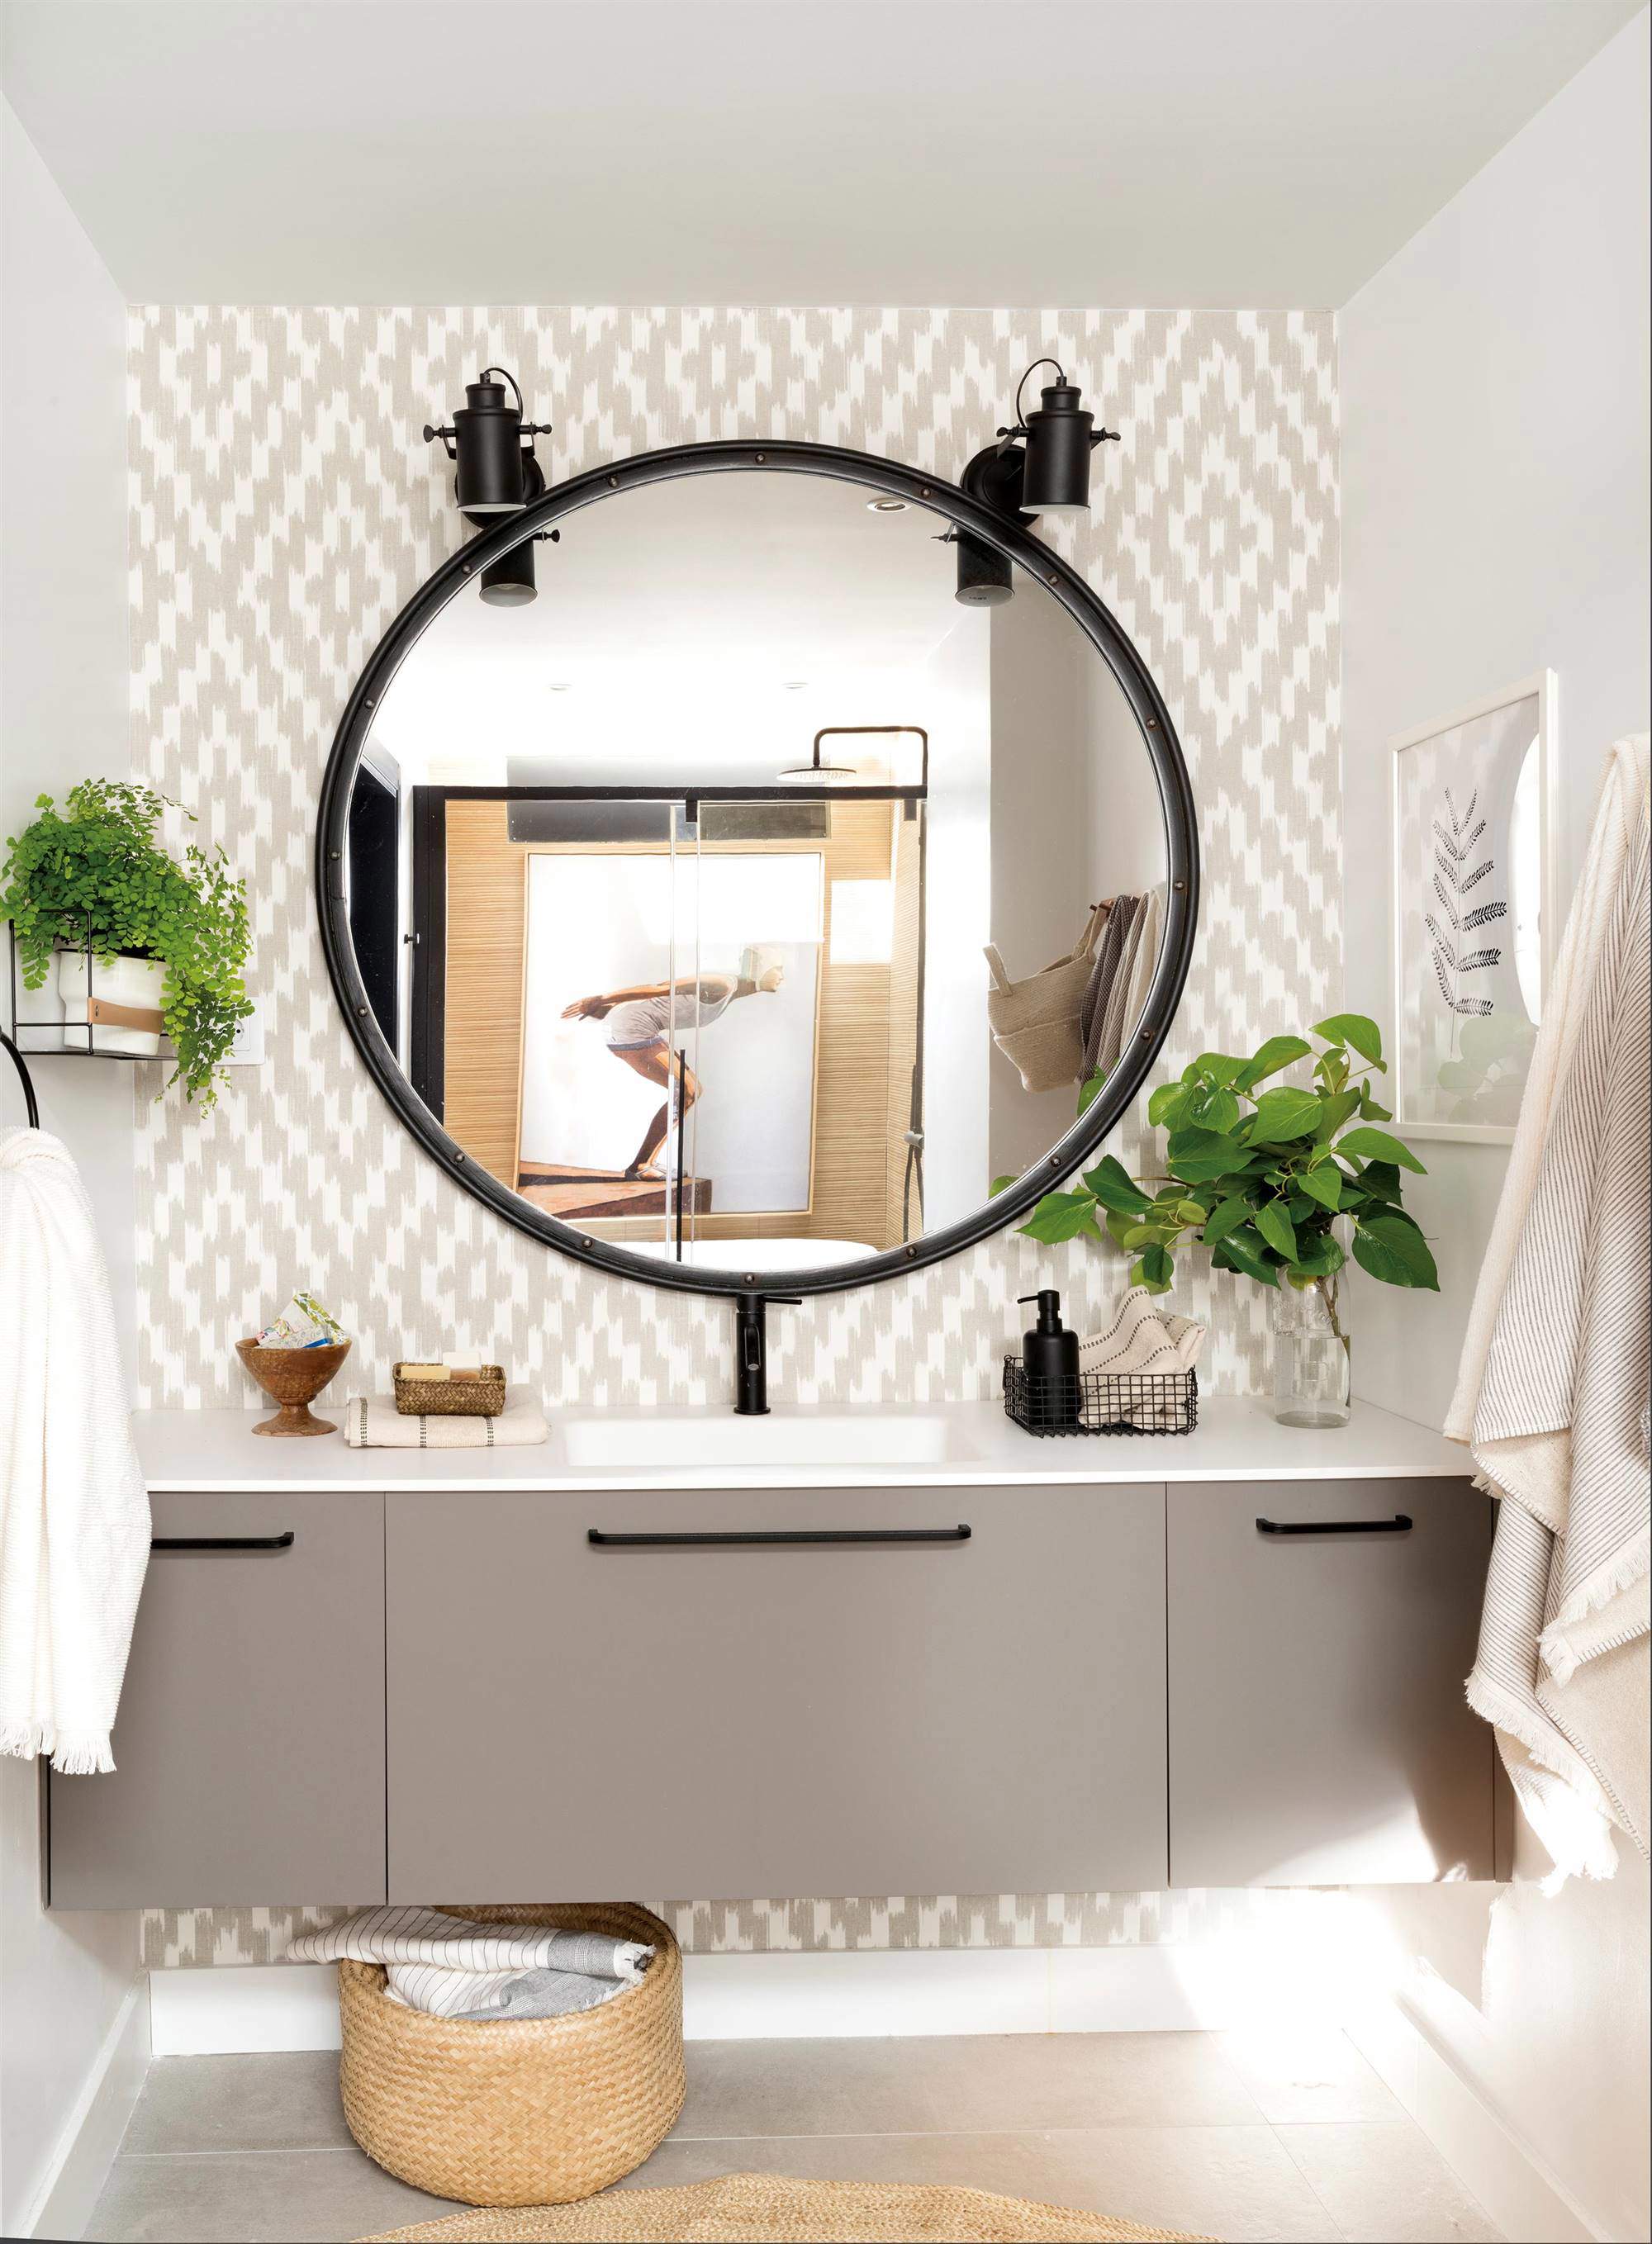 Baño con espejo grande y redondo, mueble gris volado y papel pintado.